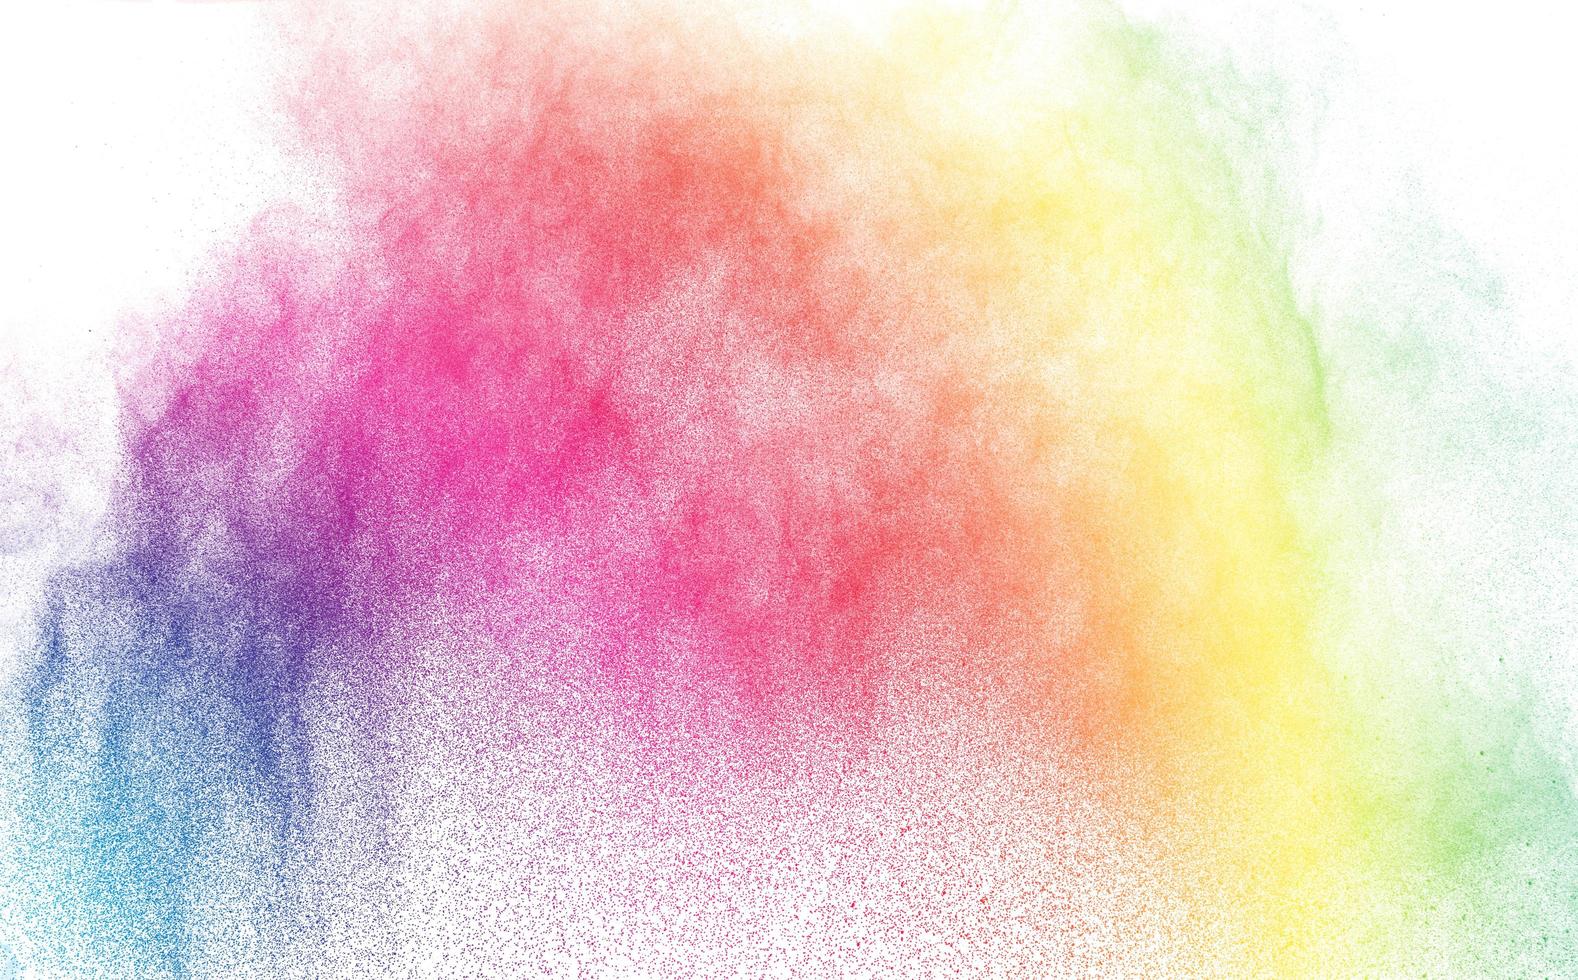 polvere multicolore astratta schizzata su sfondo bianco, congelare il movimento della polvere di colore che esplode foto